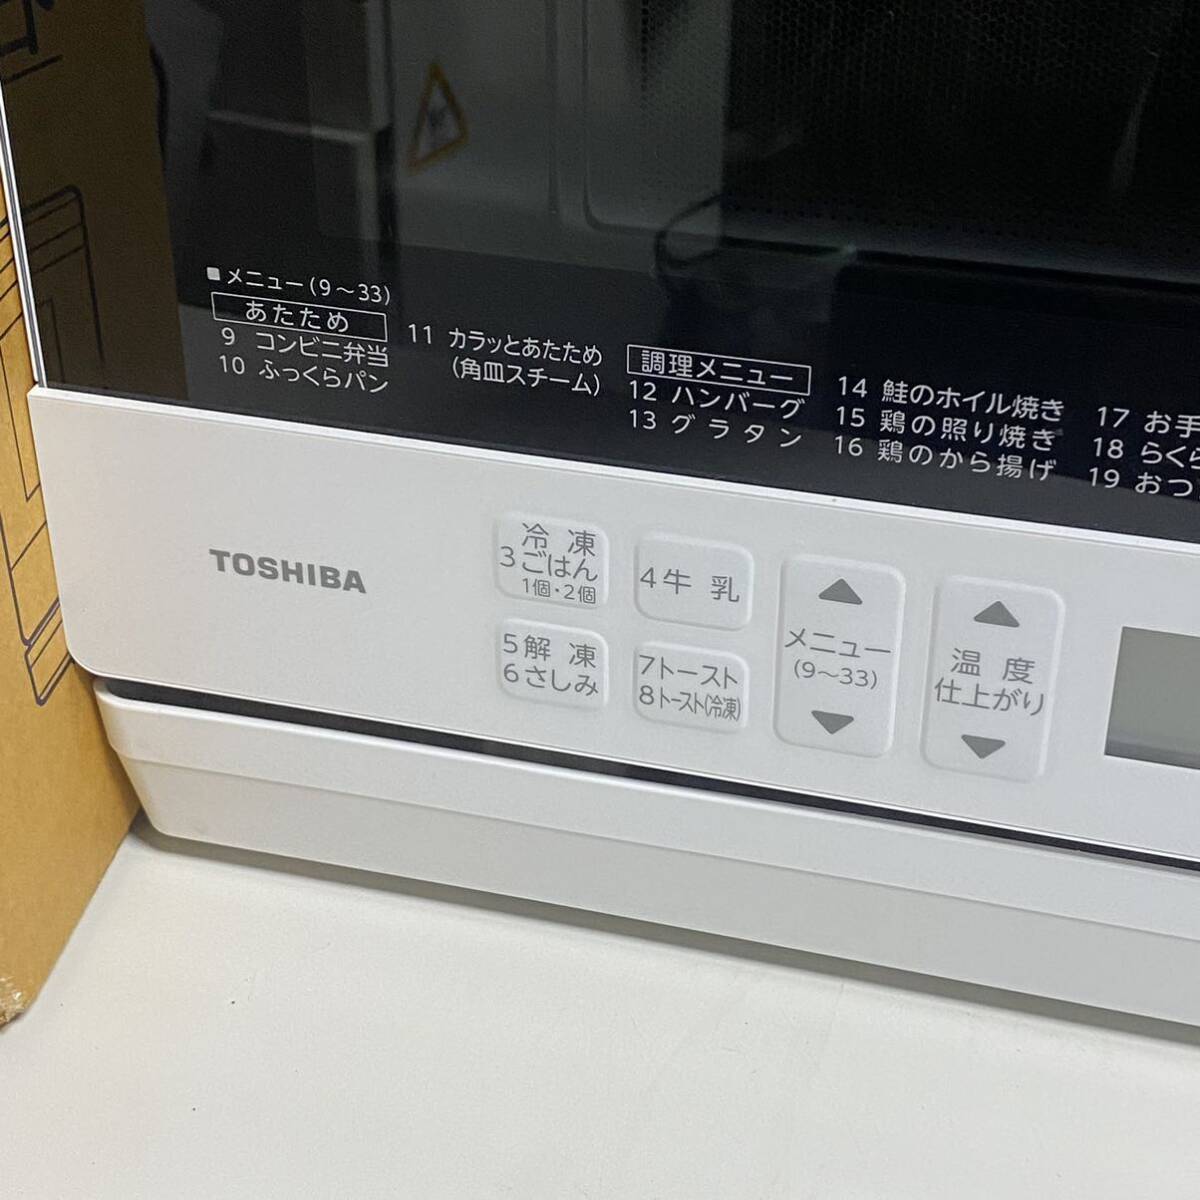  прямые продажи!2023 год производства TOSHIBA / Toshiba конвекционно-паровая печь ER-Y60 белый камень обжиг в печи печь Flat внутри корпус только для бытового использования рабочее состояние подтверждено 